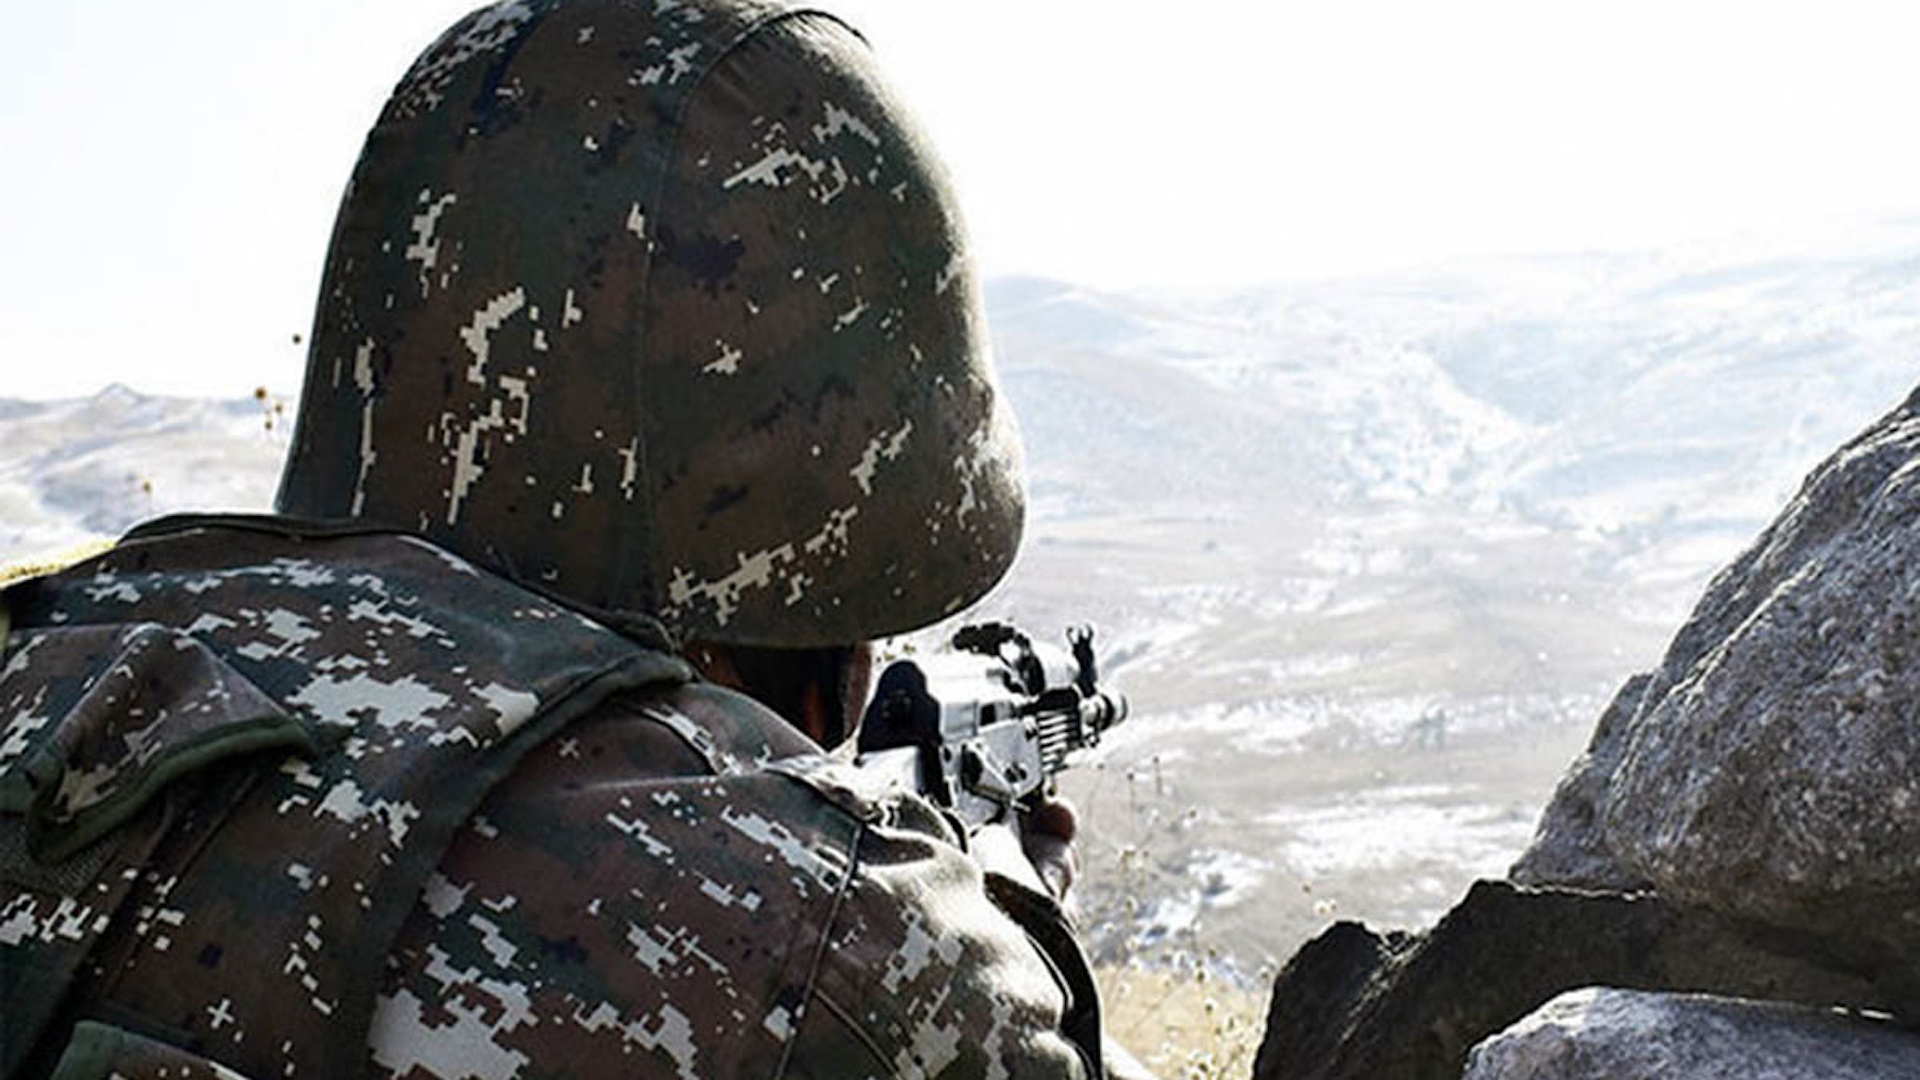 Azerbaijan shatters fragile ceasefire, killing two Armenian servicemen